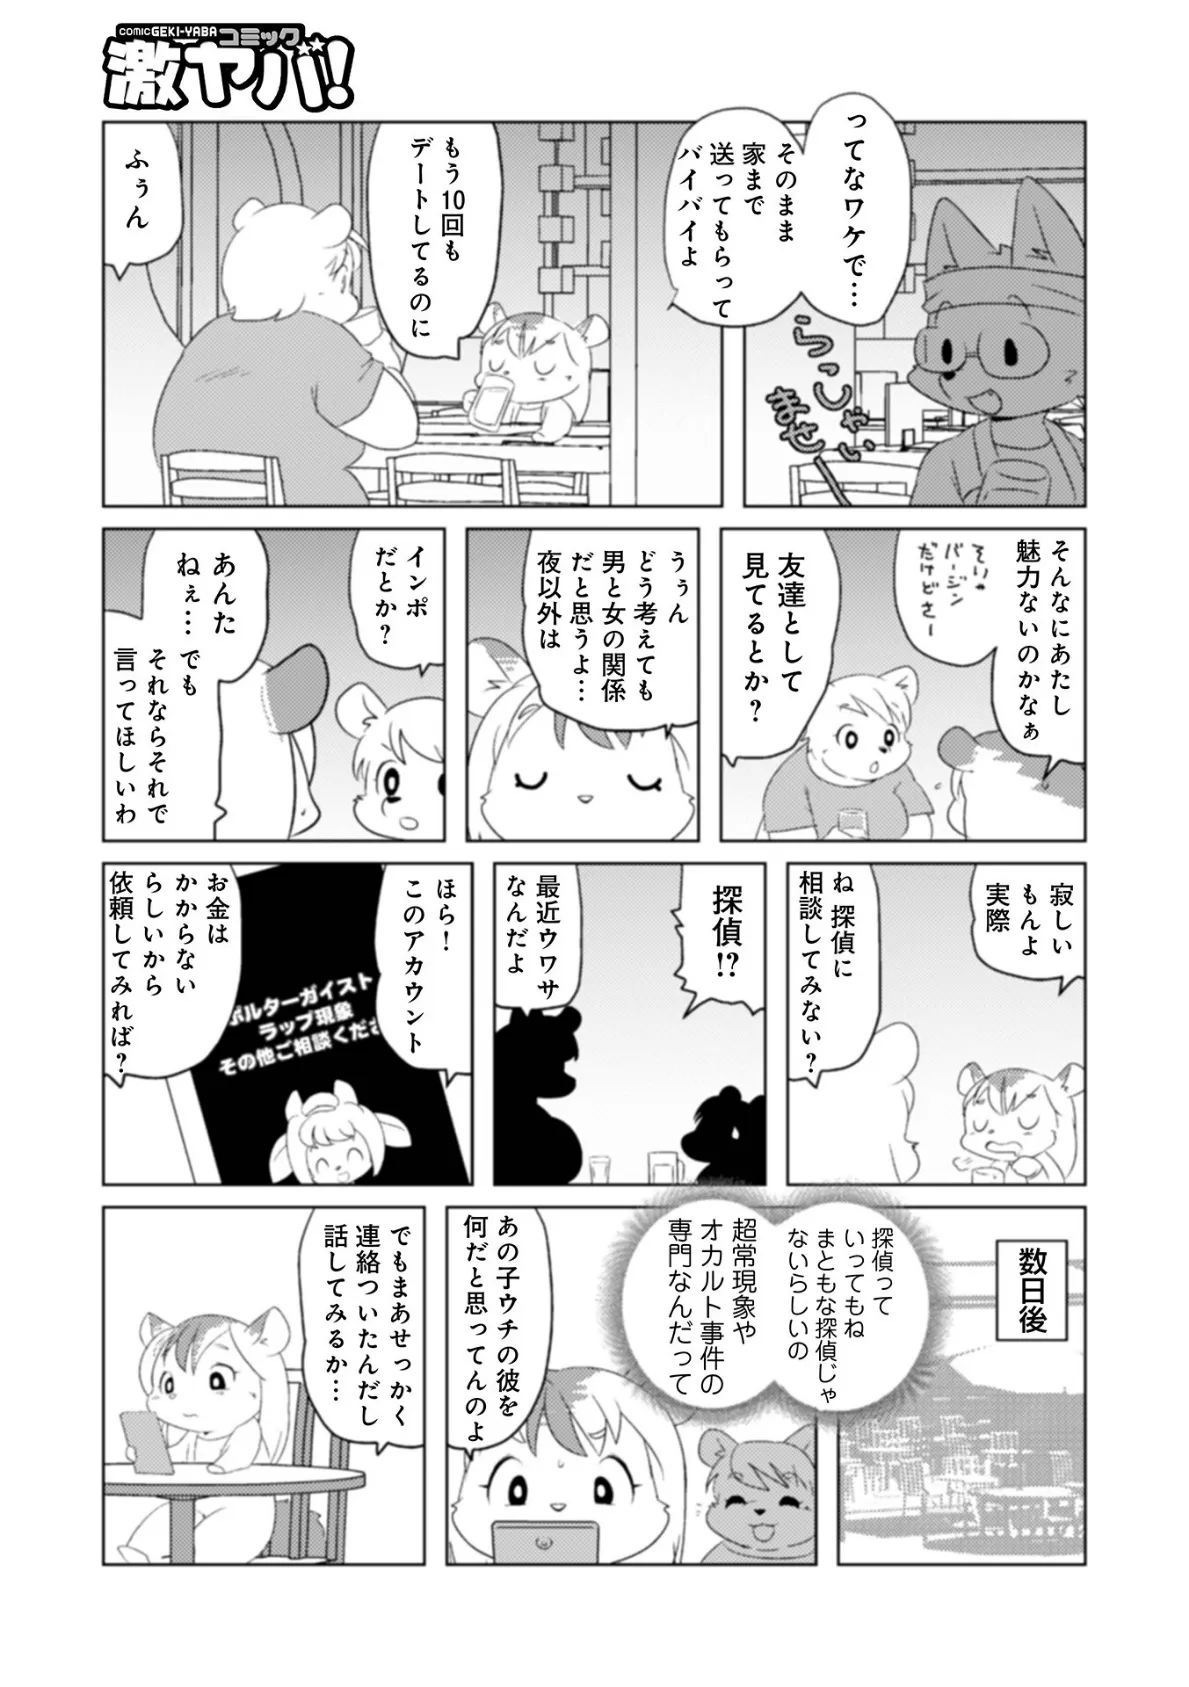 魔界探偵サバトくん第1巻 29ページ